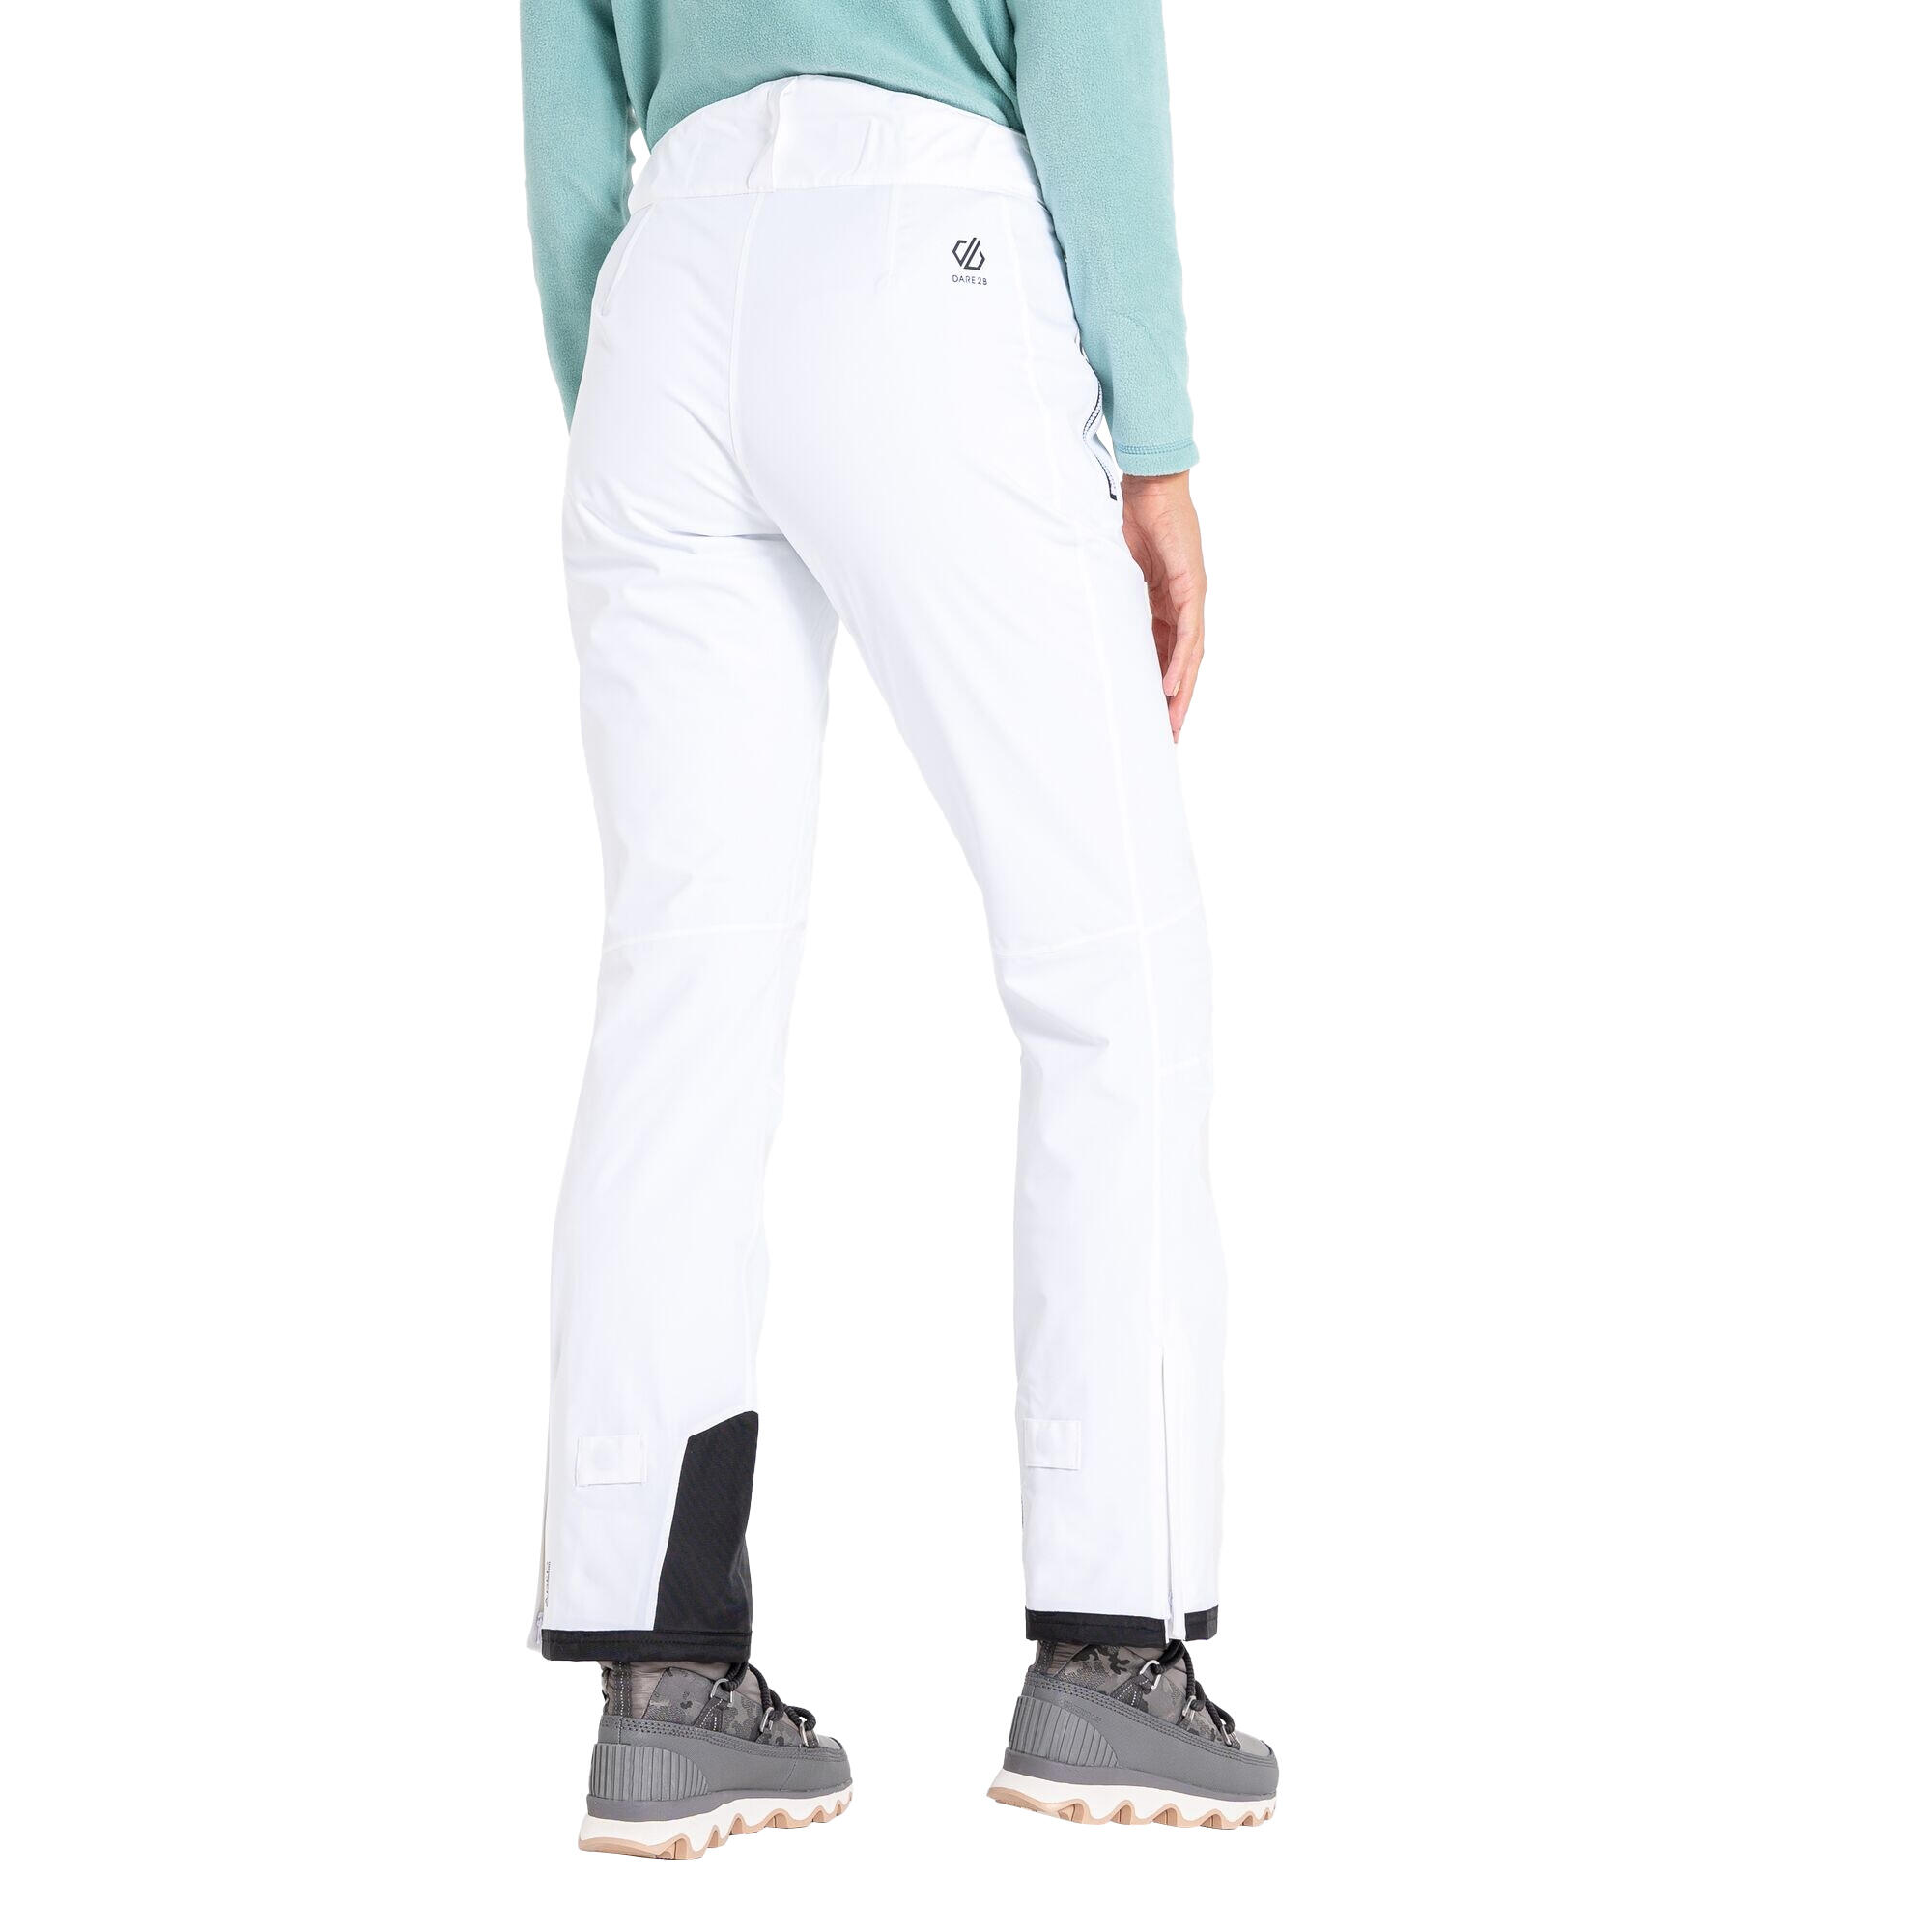 Womens/Ladies Effused II Waterproof Ski Trousers (White) 4/5